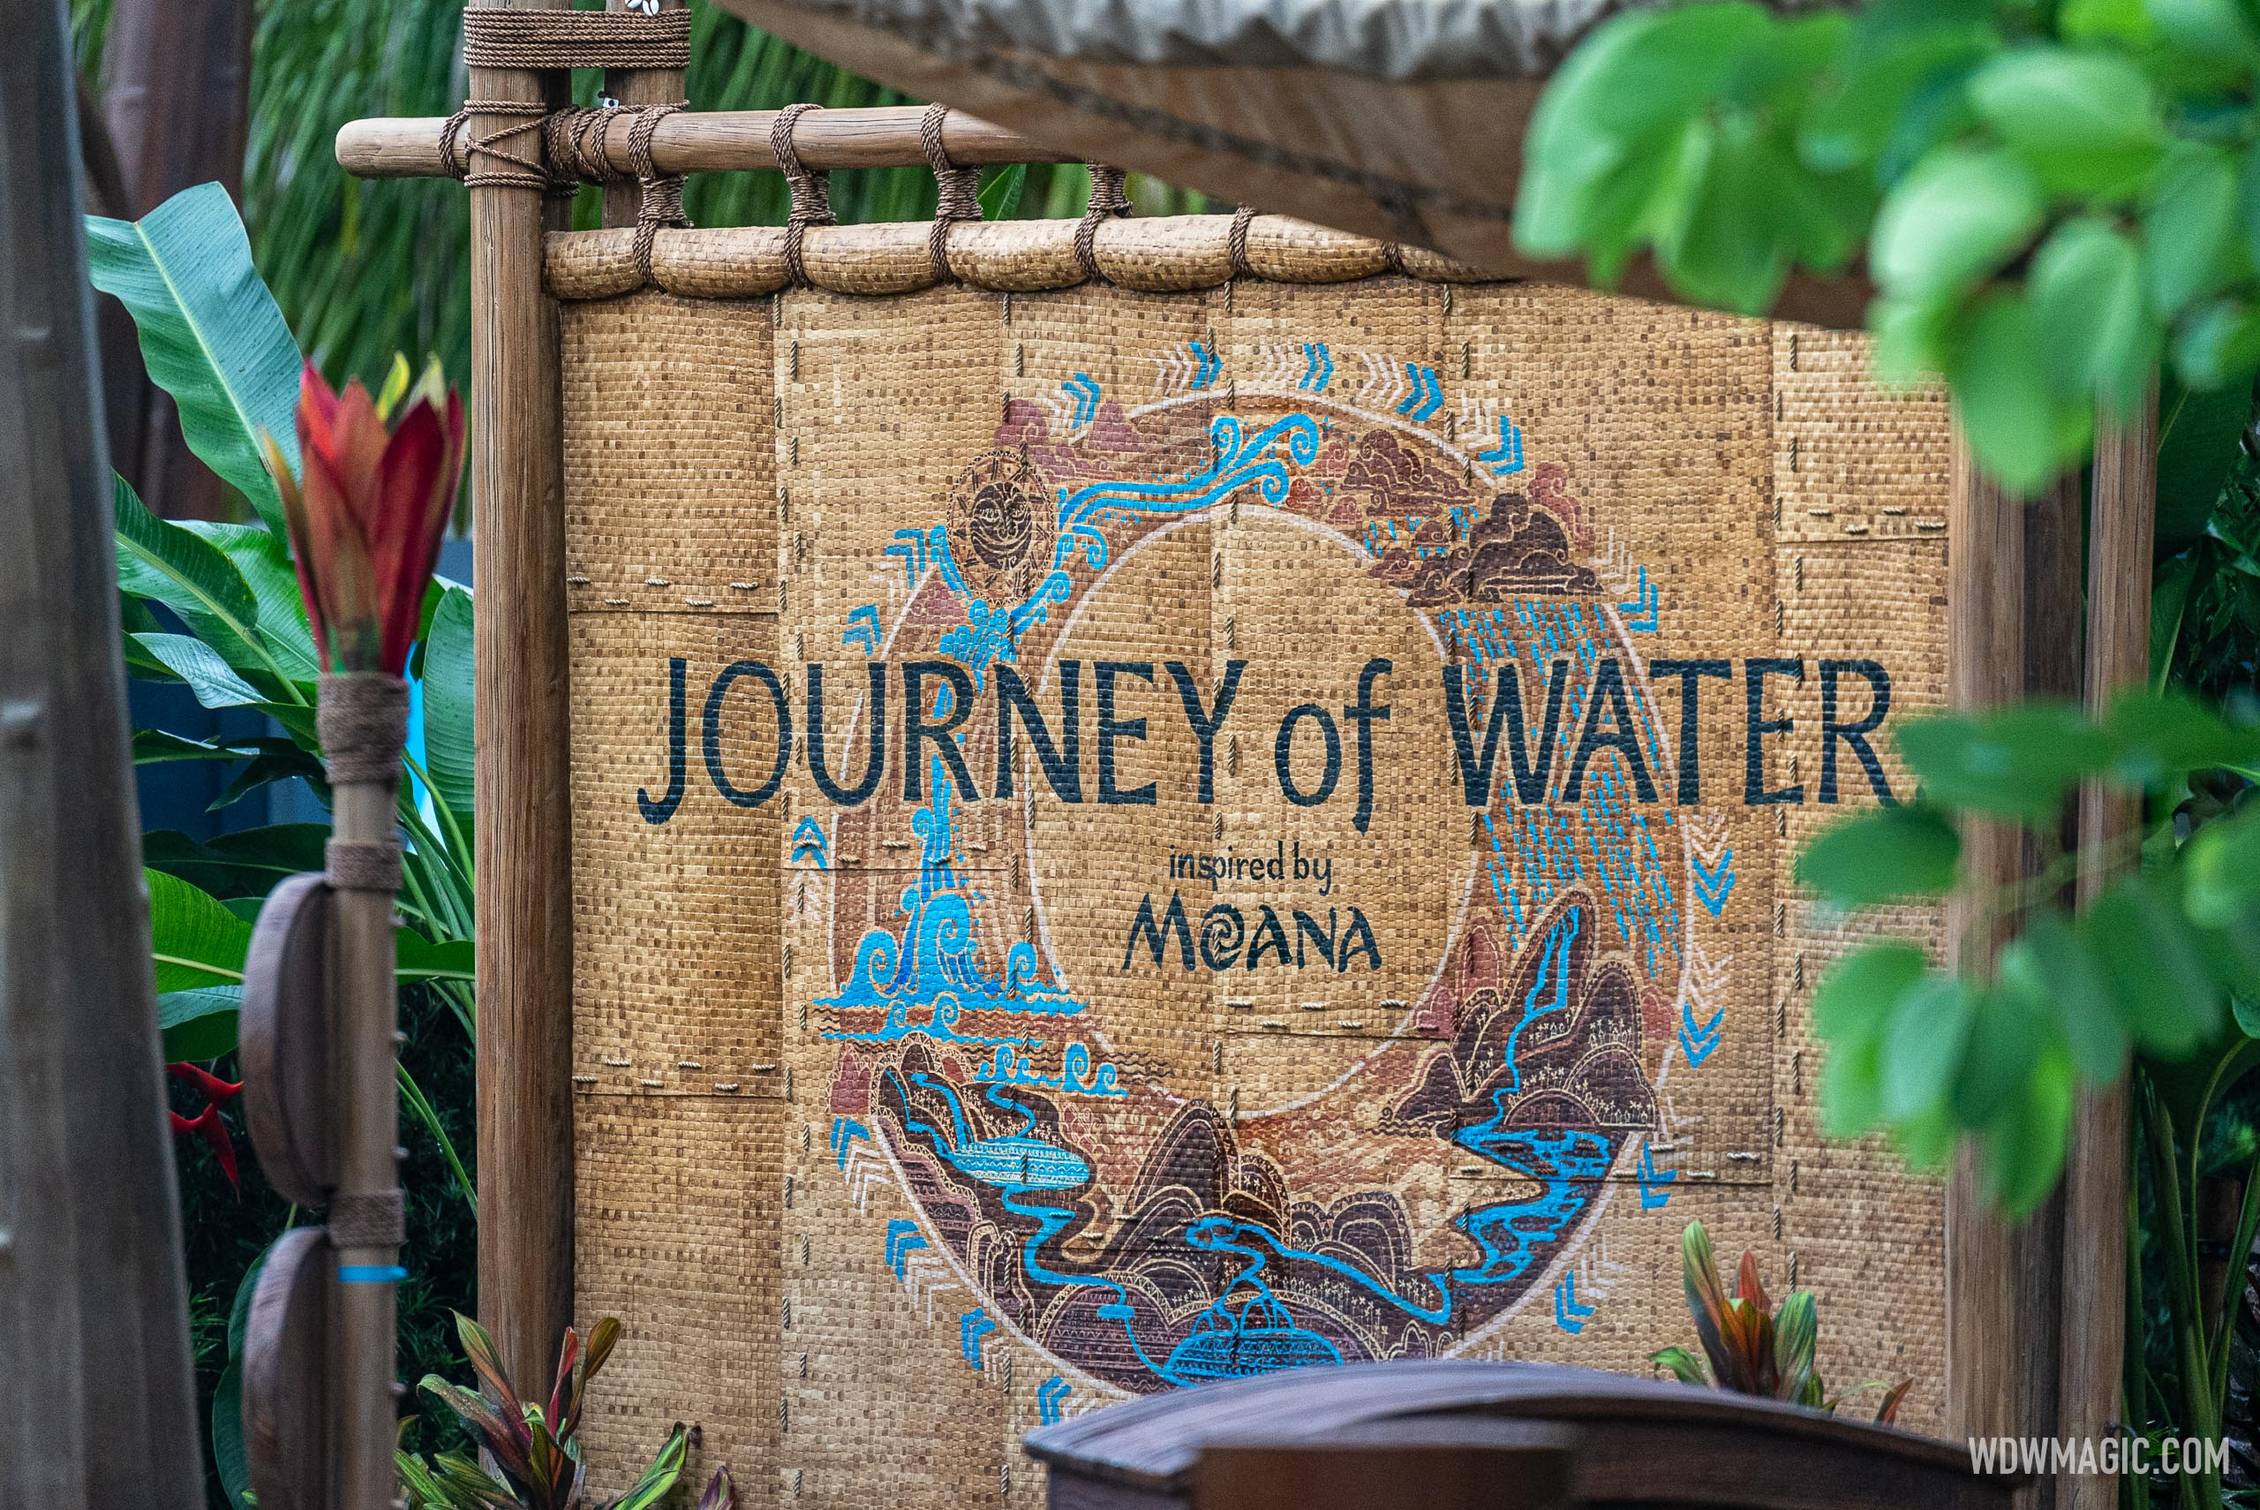 Journey-of-Water-Inspired-by-Moana_Full_52868.jpg